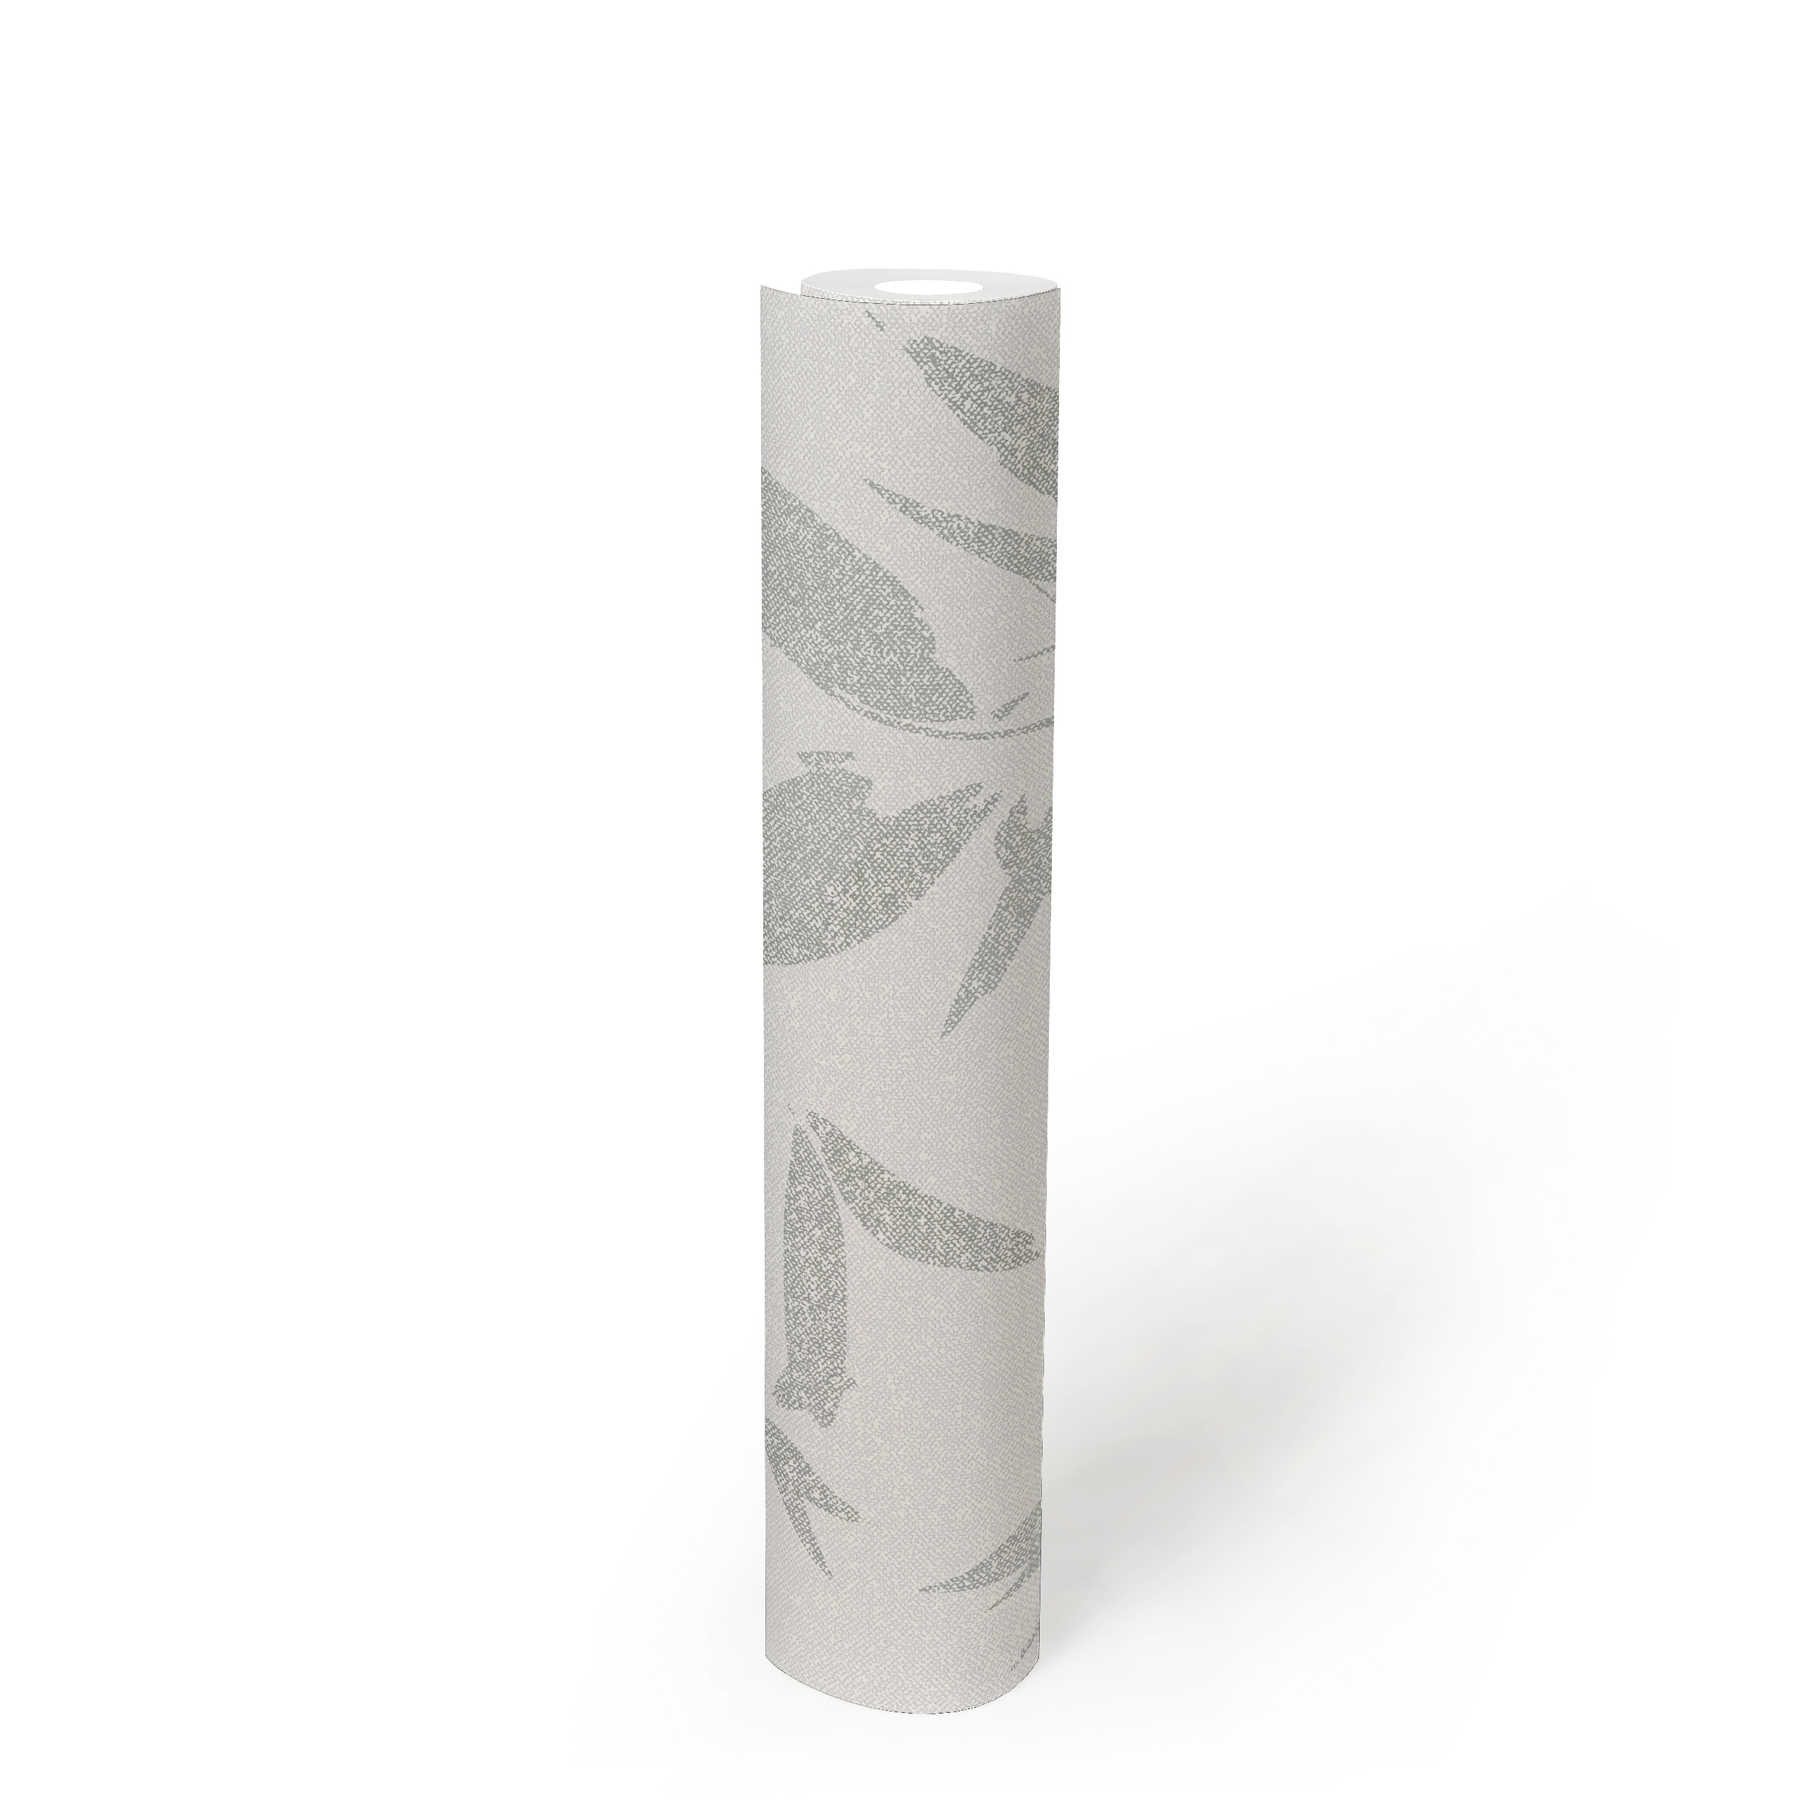             Papel pintado no tejido con motivo de hojas, aspecto textil - blanco, crema, gris
        